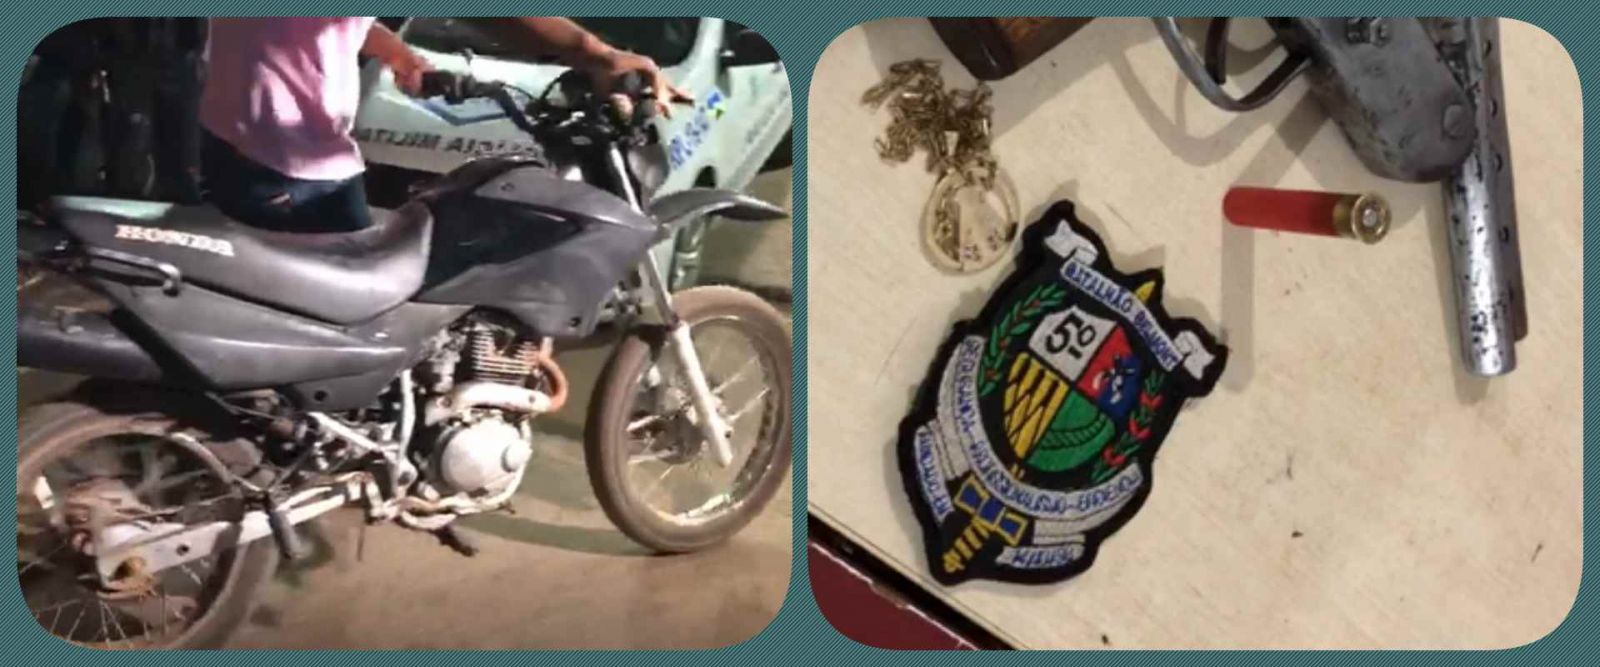 Polícia prende dupla suspeita de cometer assaltos com arma e moto roubada - News Rondônia